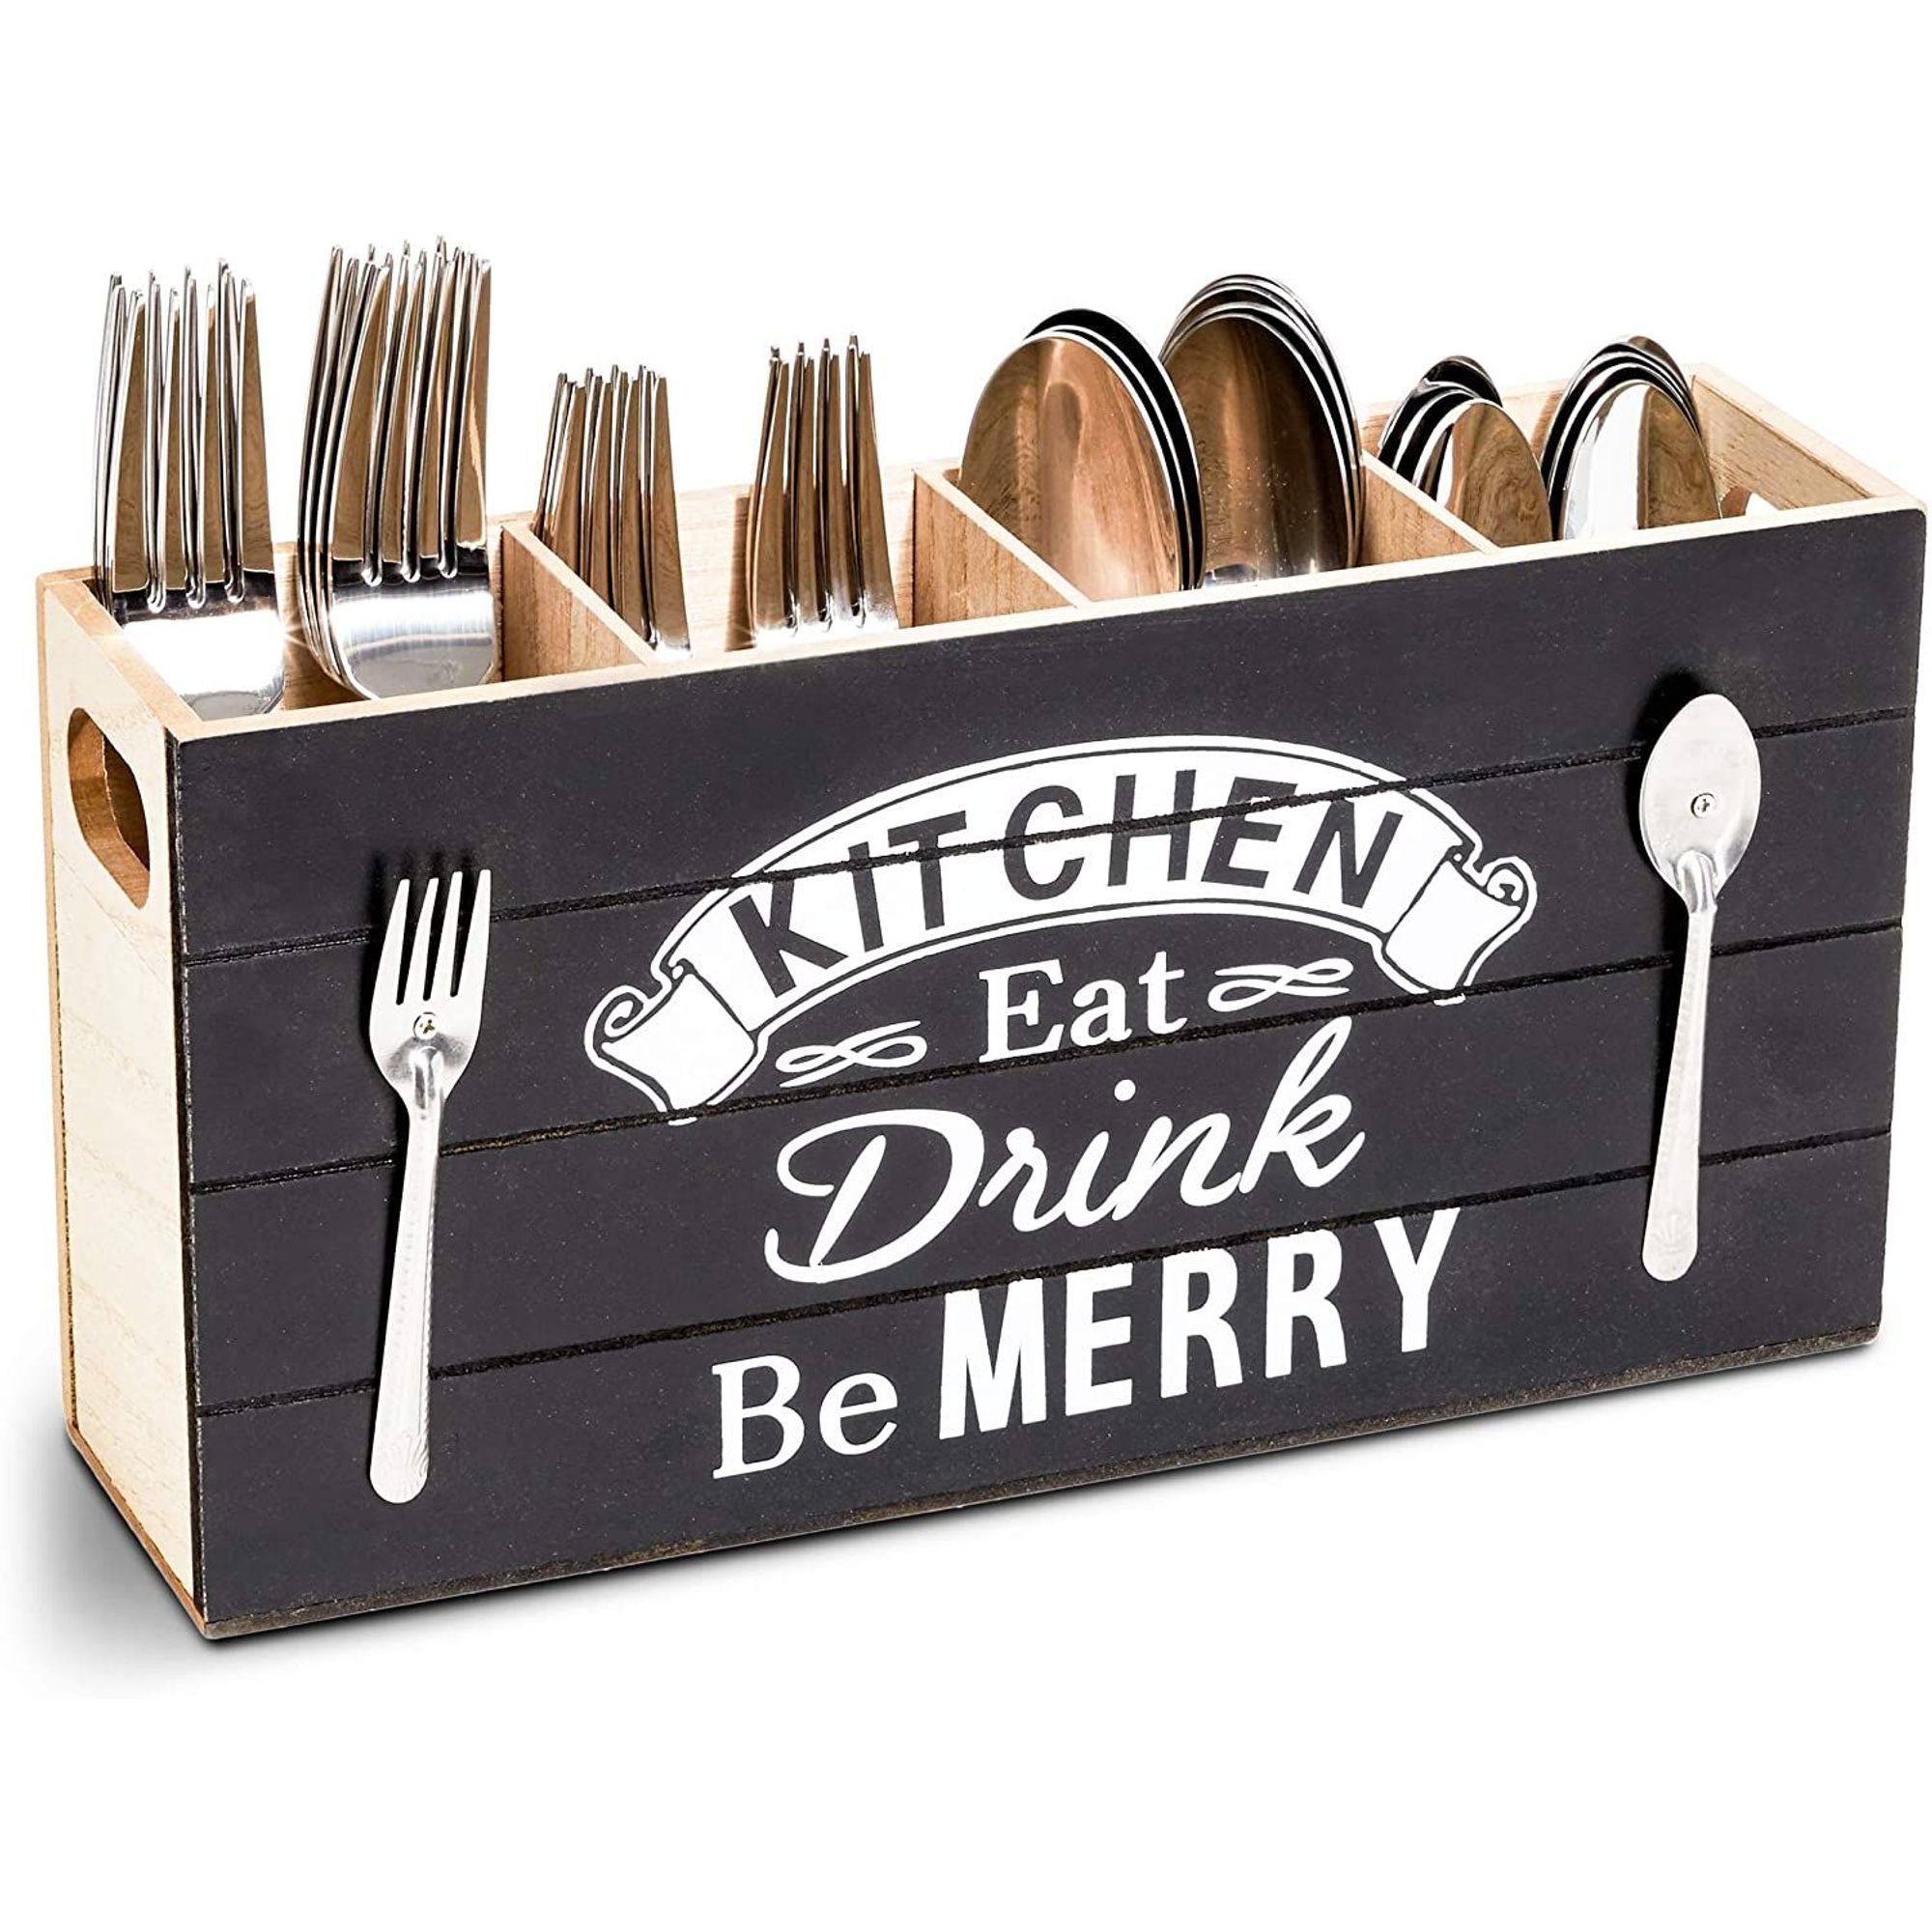 Cutlery Holder Utensil Organizer Spoon Storage Drainer Flatware Kitchen Supplies